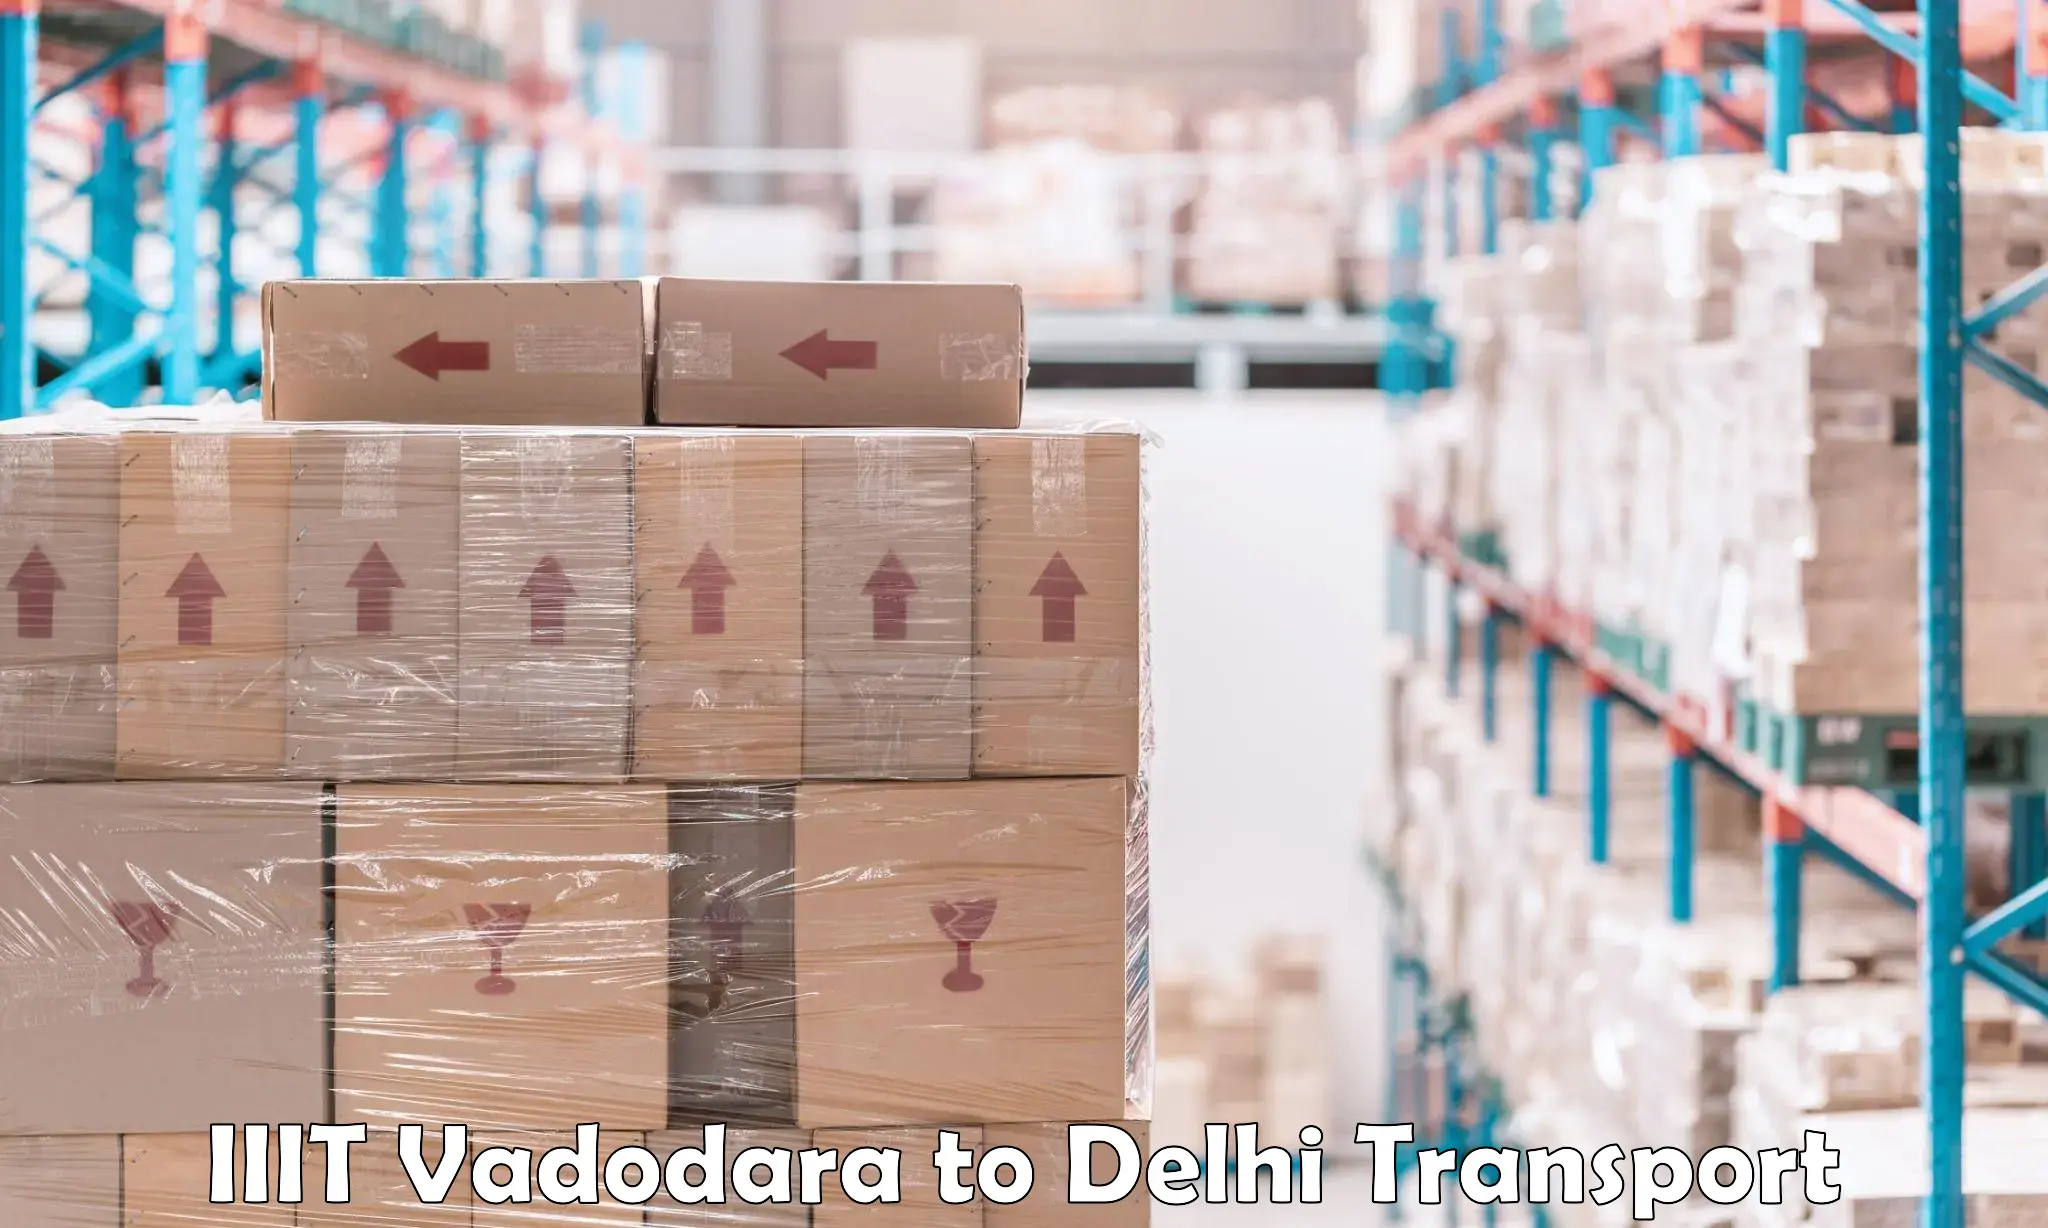 Furniture transport service IIIT Vadodara to IIT Delhi